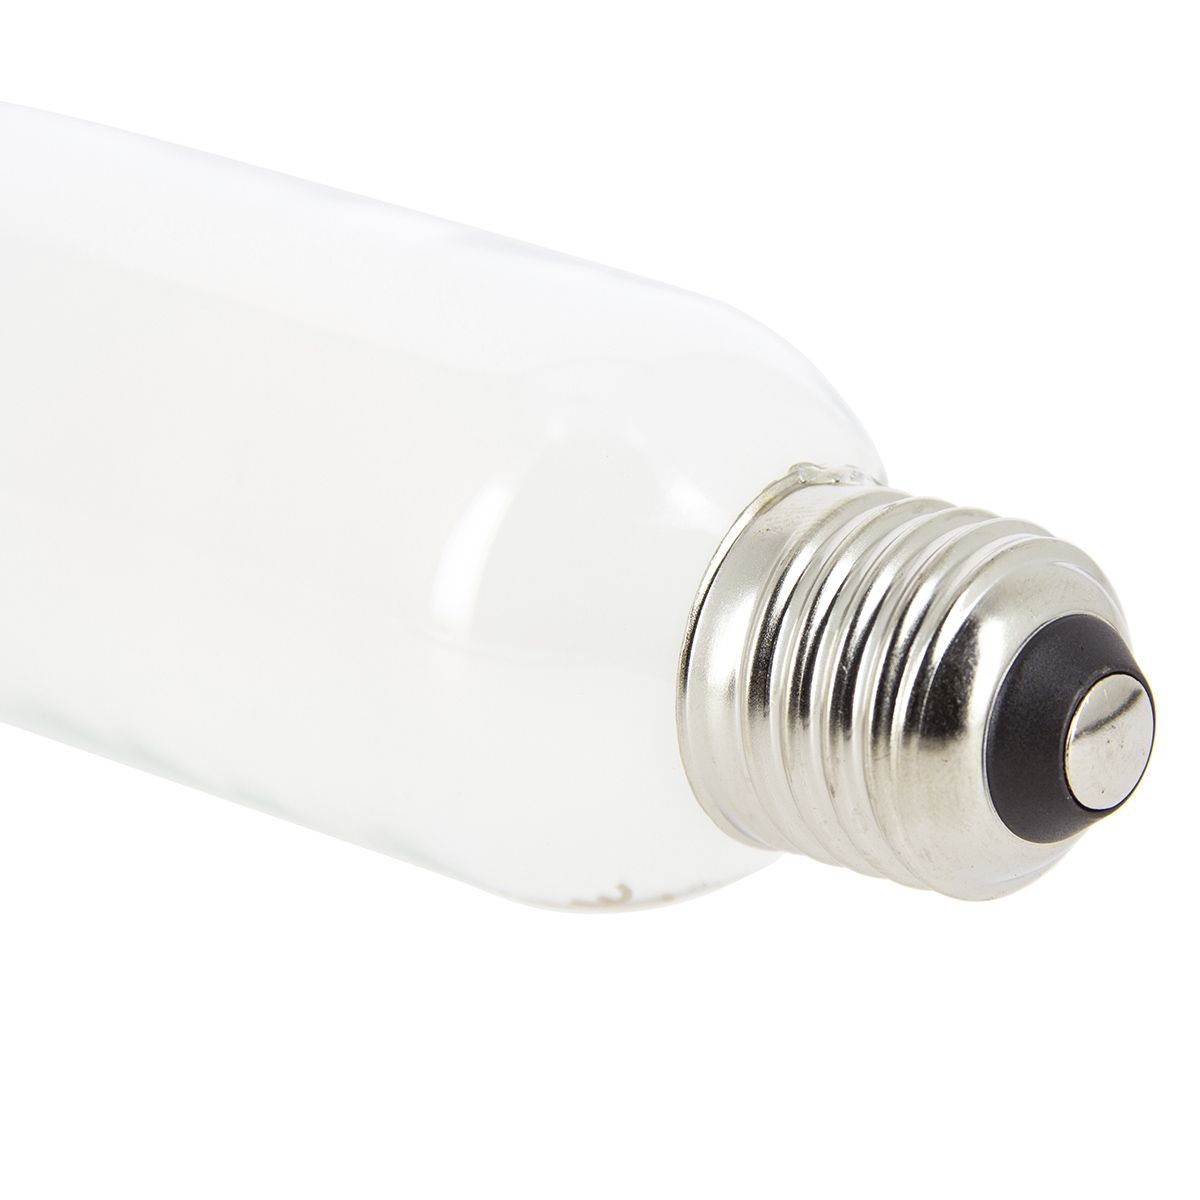 Krisane - lot de 10 ampoule LED E27 - 9W - blanc - 3000K - Réf: KRI24993(10)